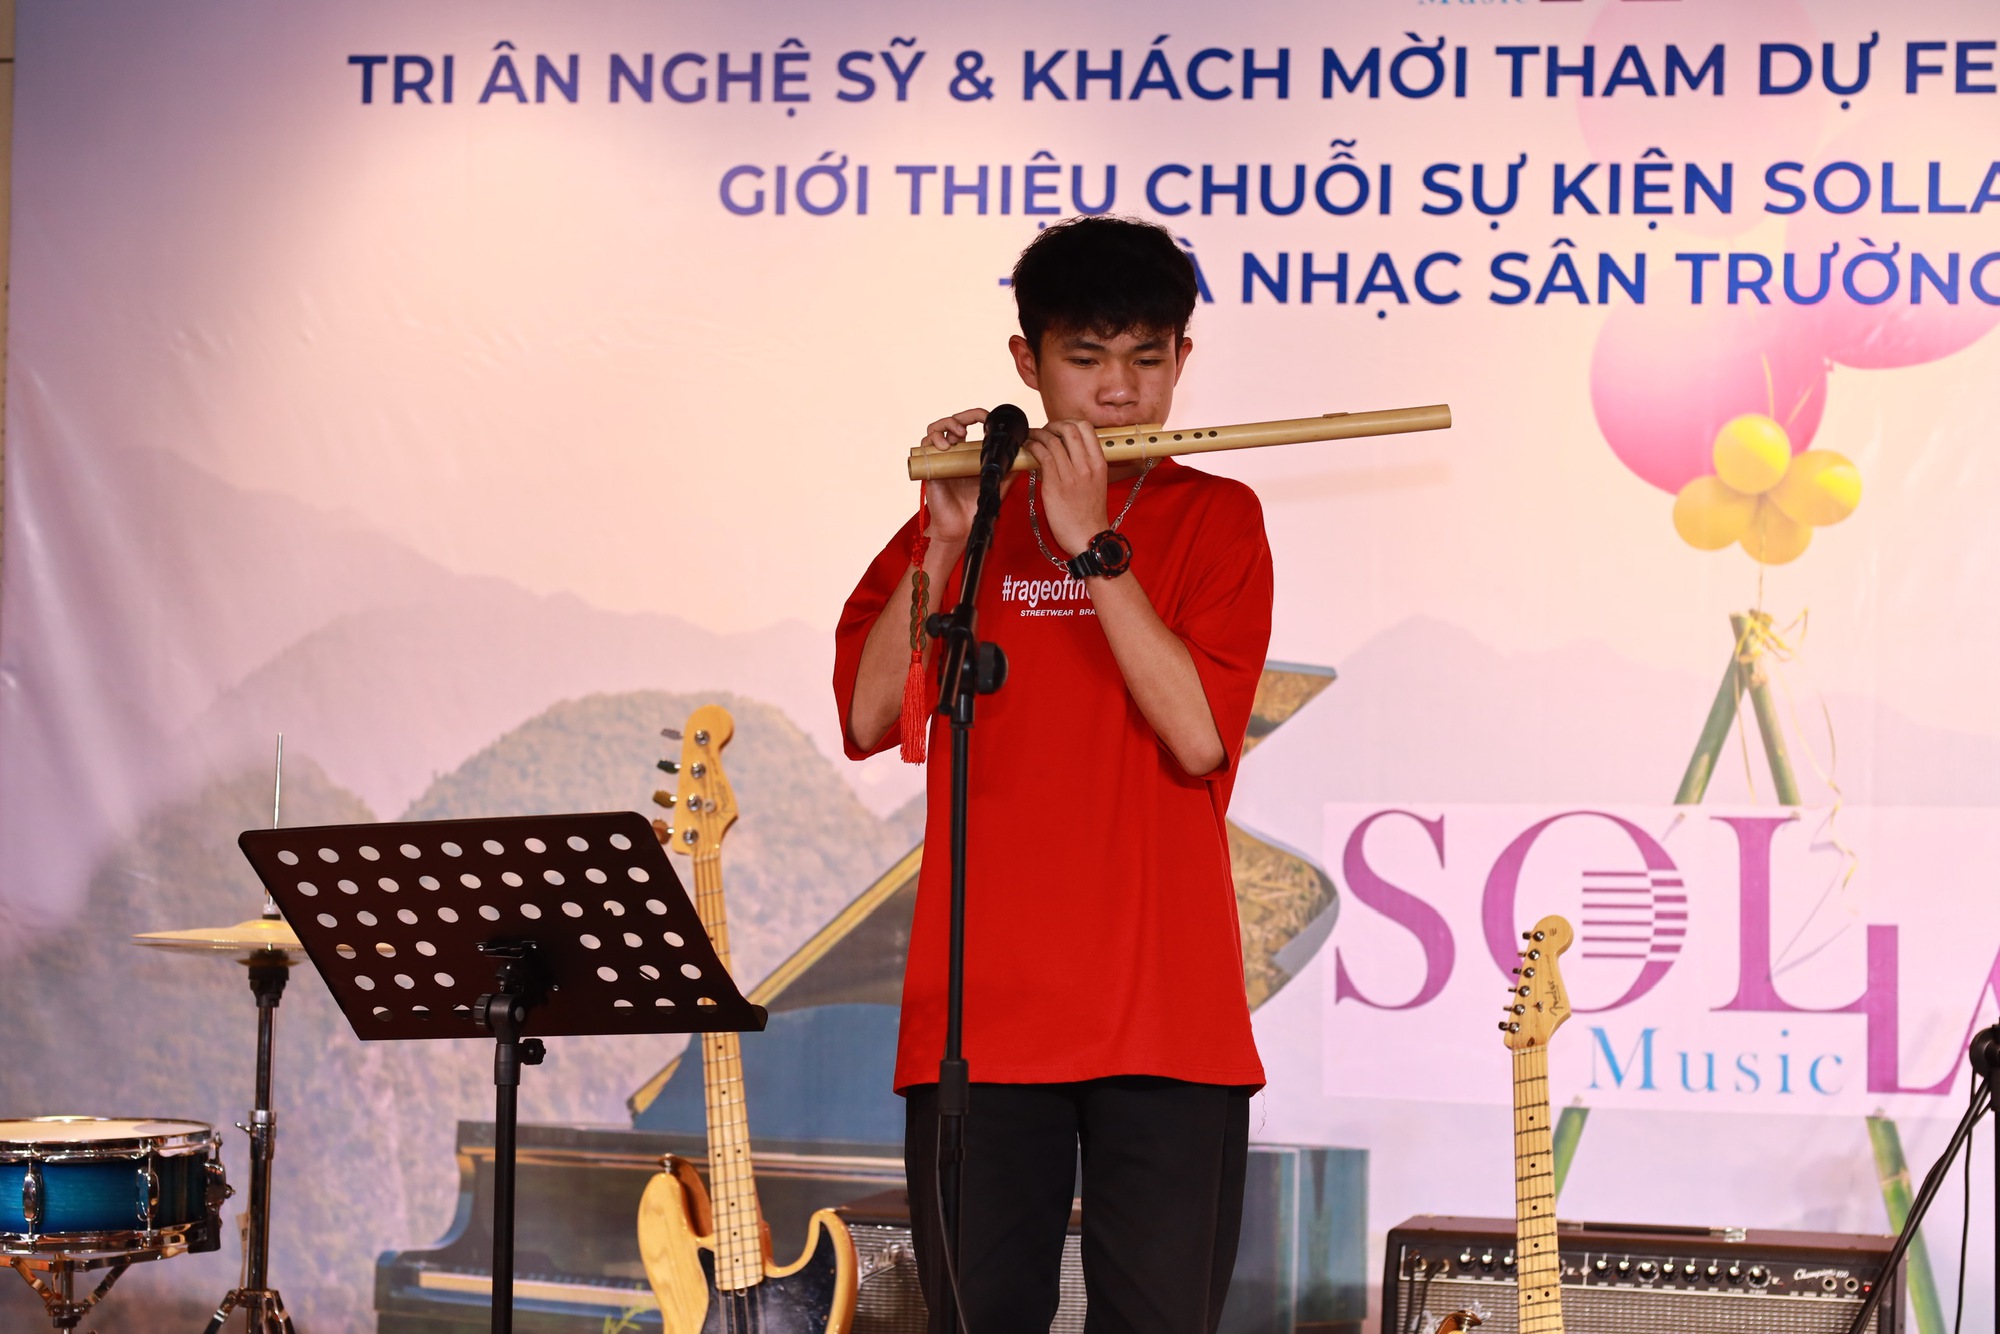 Da LAB, Ngũ Cung, Khánh Linh sẽ khác lạ khi hát cùng học sinh trong Solla Music - Hòa nhạc sân trường - Ảnh 5.